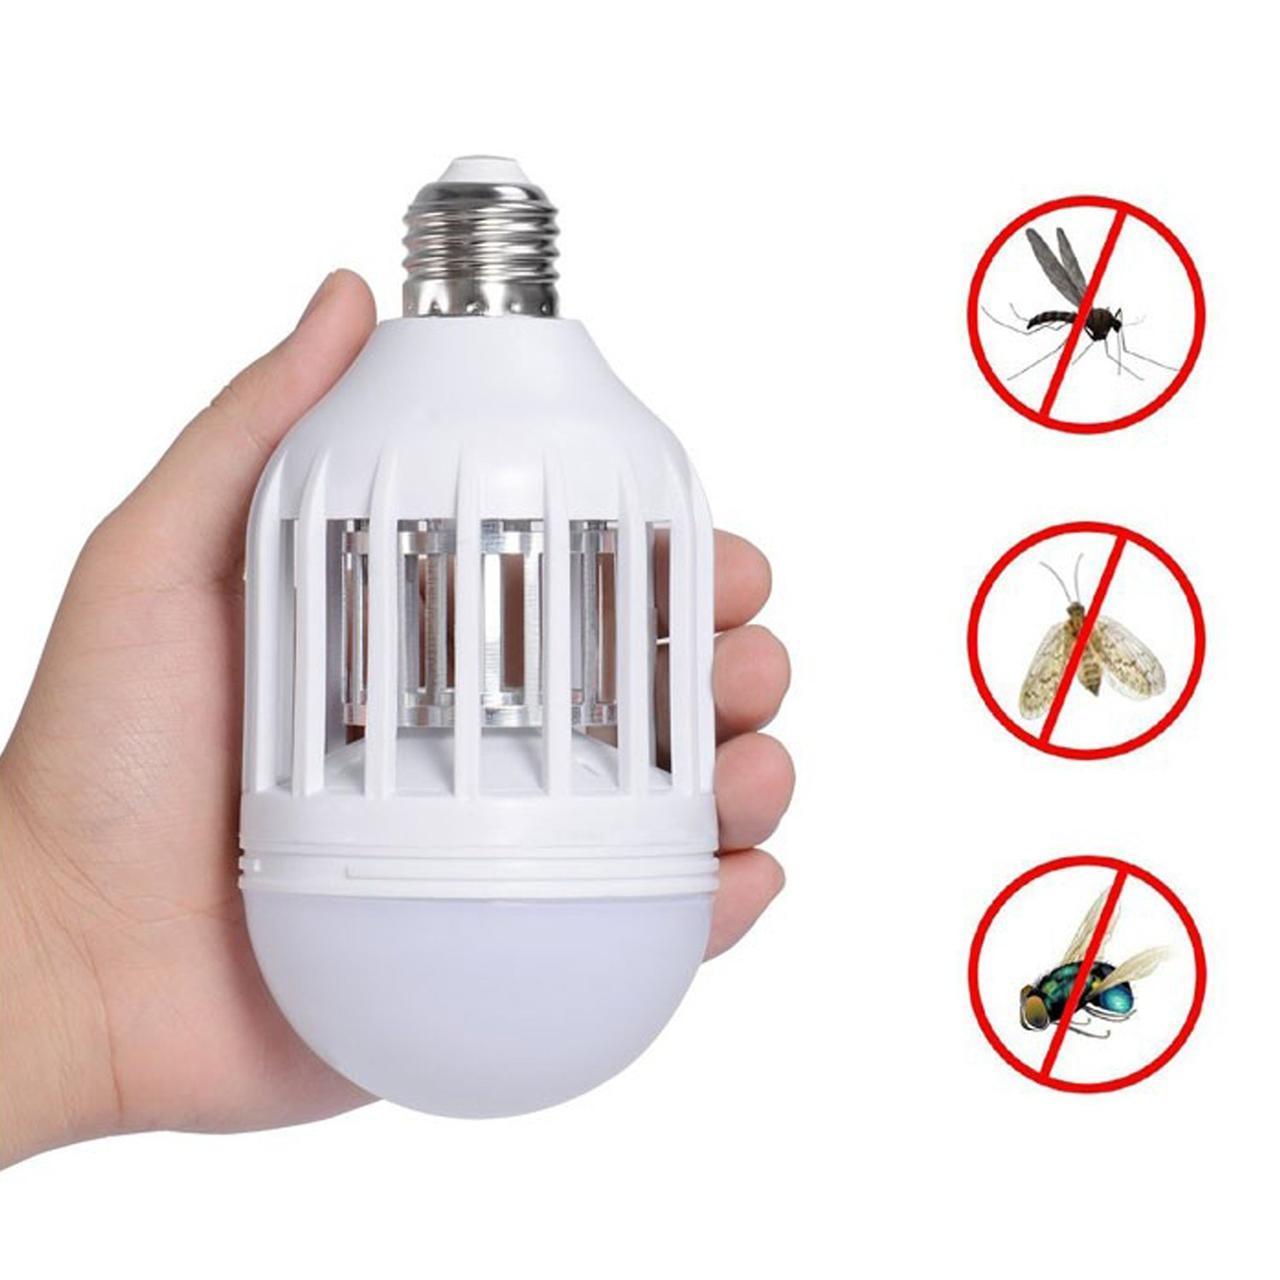 Уничтожитель насекомых, инсектицидная лампа, Zapp Light, ловушка для мух и комаров, с доставкой (F-S)